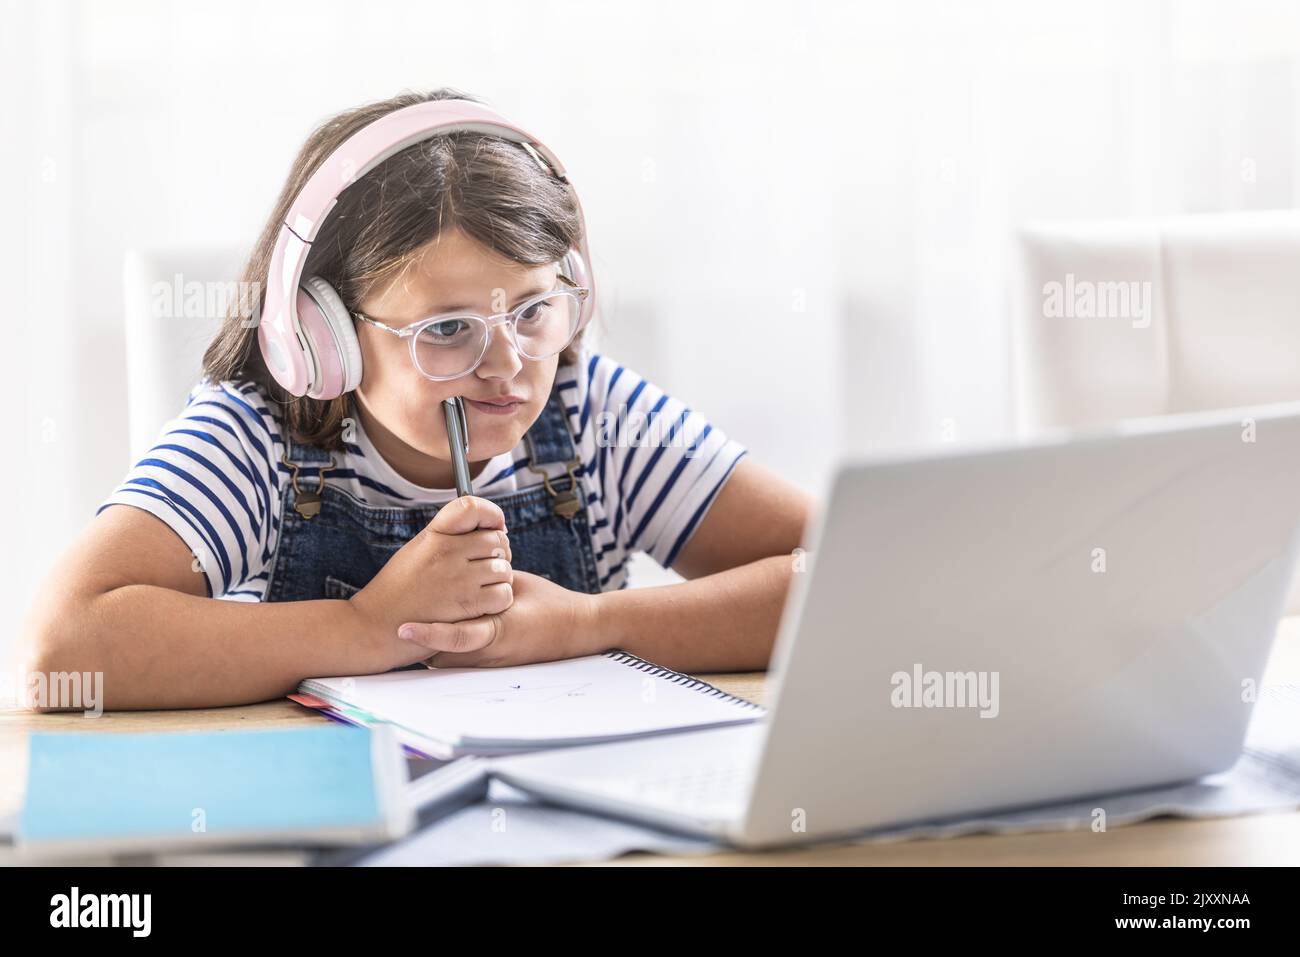 Ragazza in cuffie indossa occhiali e si appoggia contro la matita cercando di capire le cose che studia online. Foto Stock